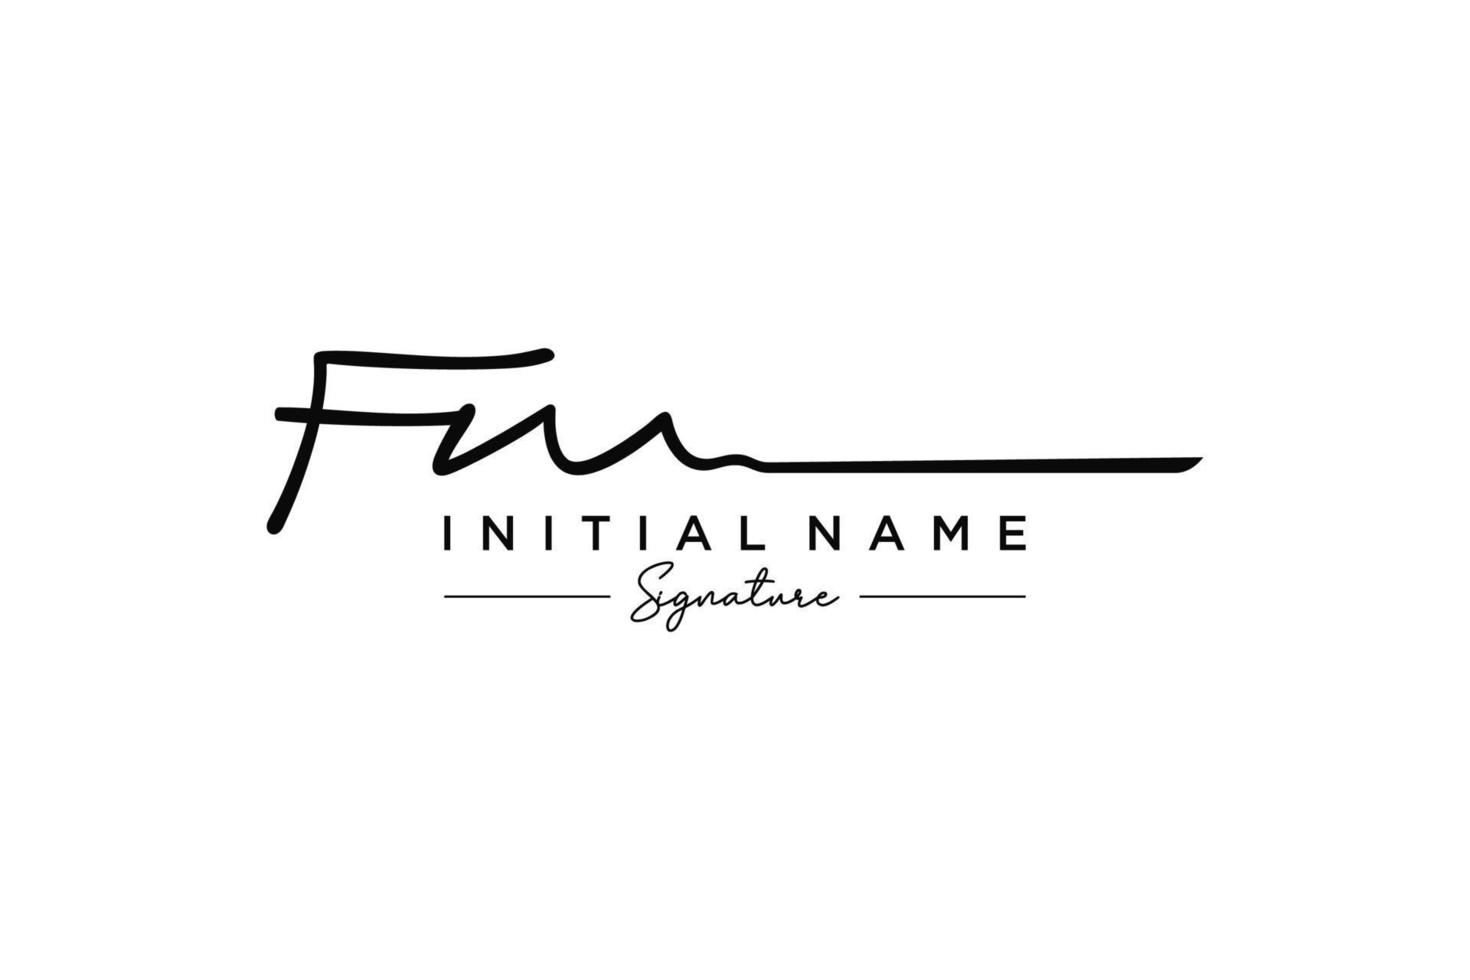 vetor de modelo de logotipo de assinatura fm inicial. ilustração vetorial de letras de caligrafia desenhada à mão.